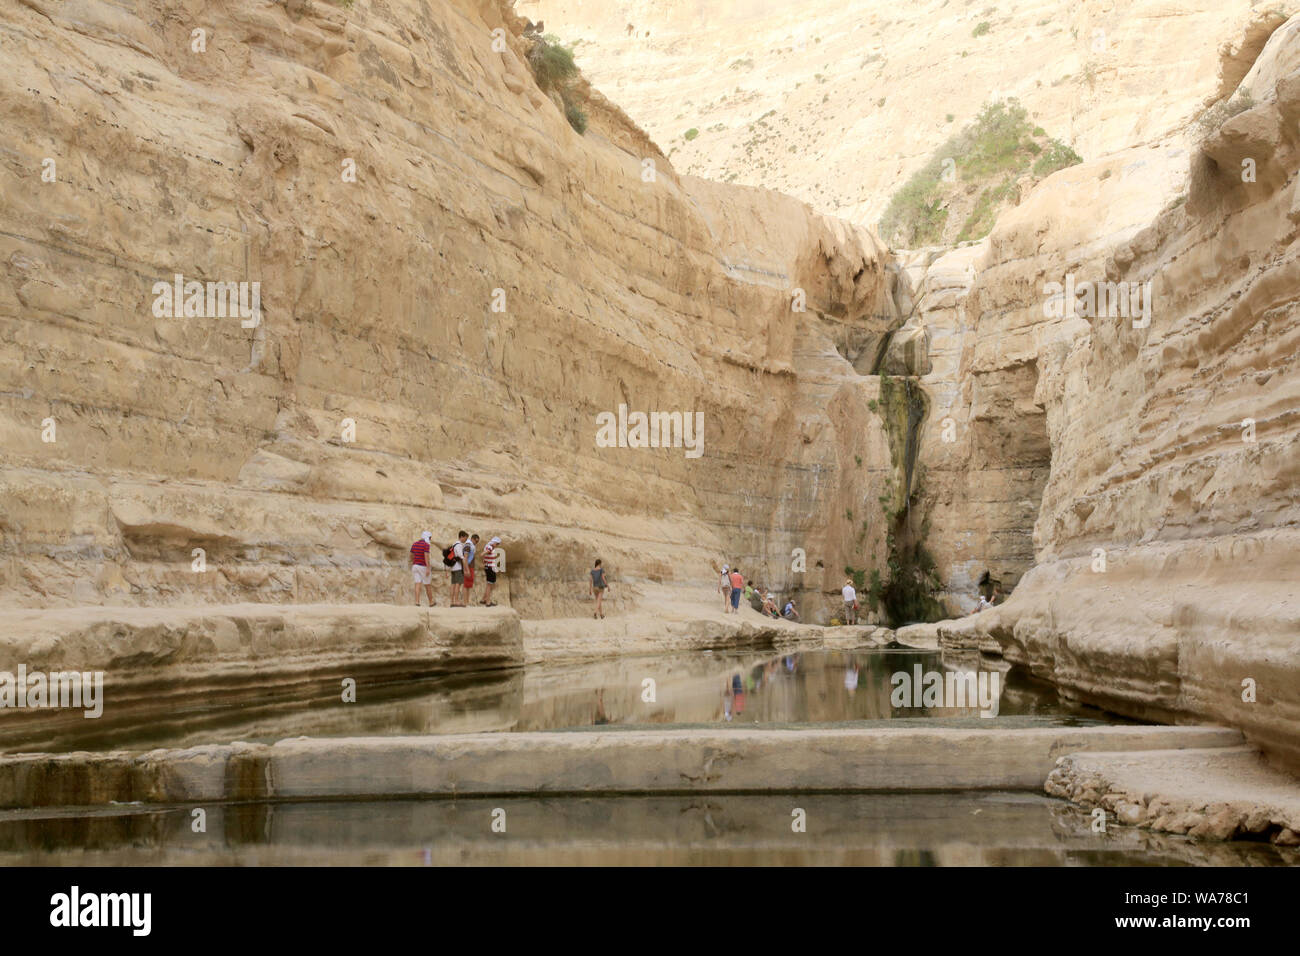 Pèlerinage en Terre Sainte. Ein Avdat Canyon. Désert du Néguev. Israël. Banque D'Images